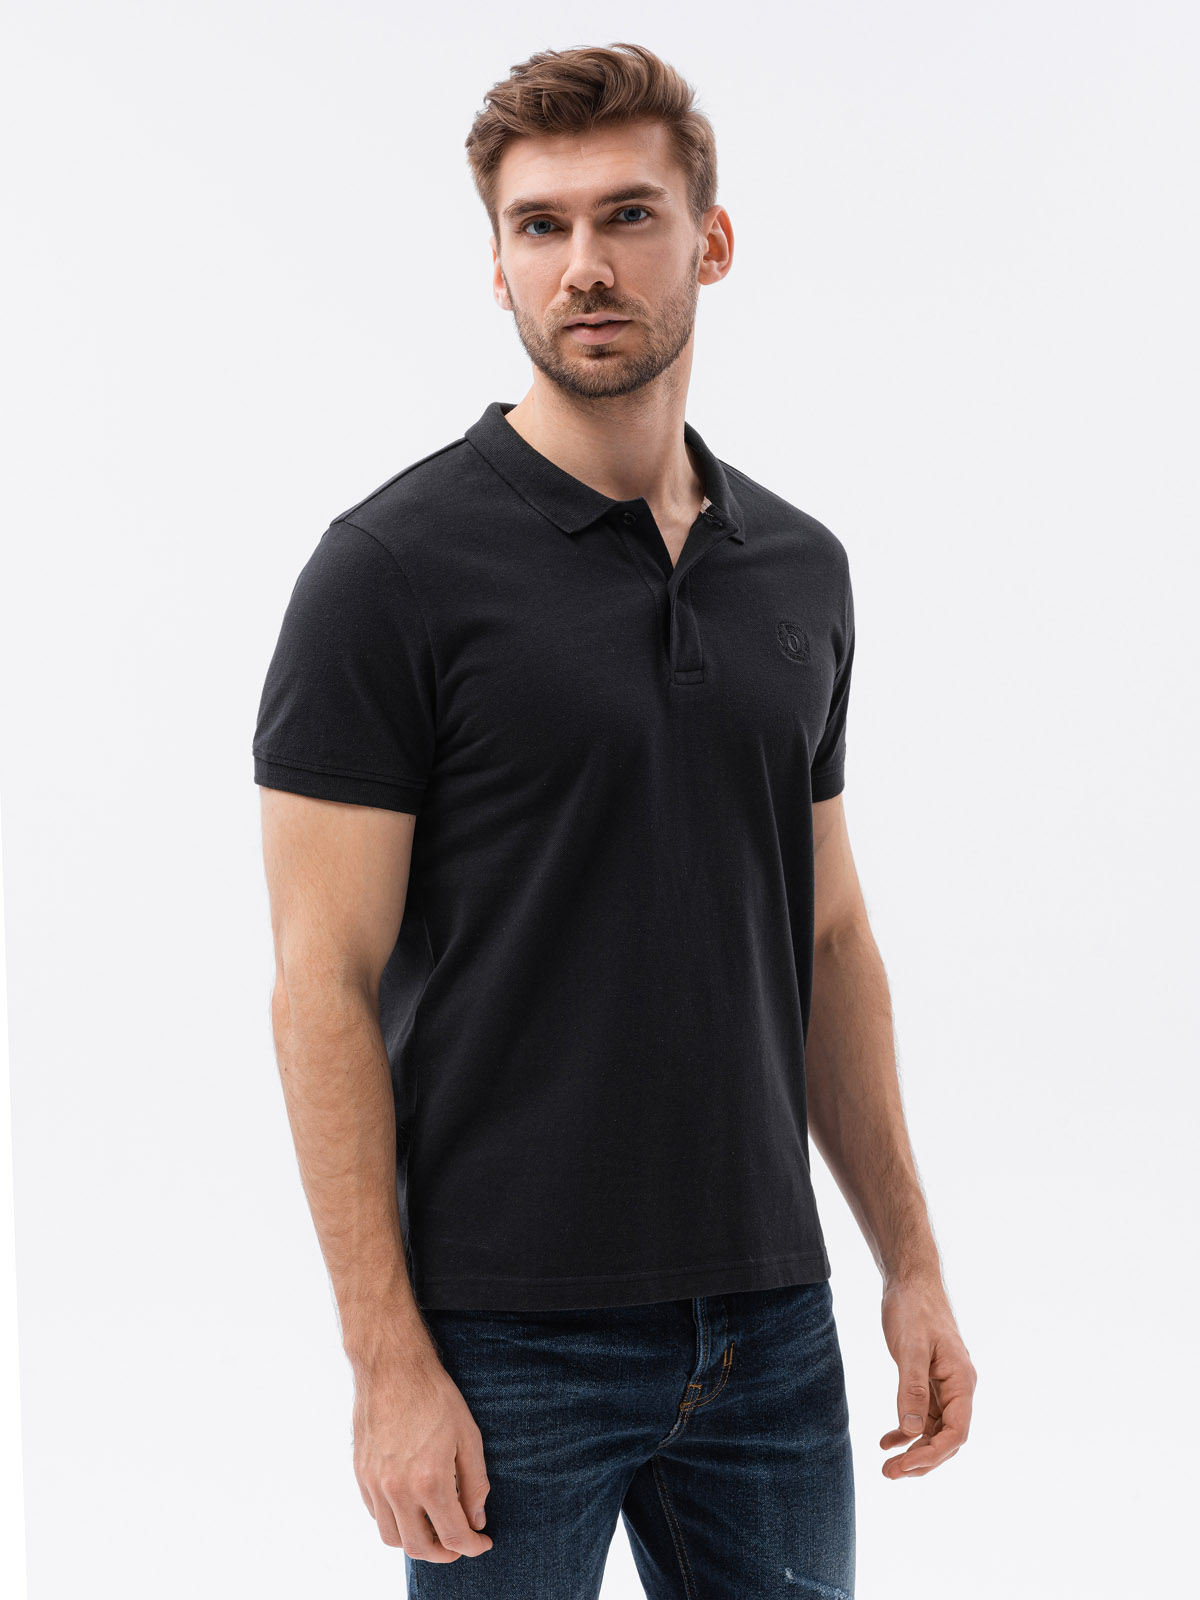 Koszulka męska polo z dzianiny pique - czarna V1 S1374